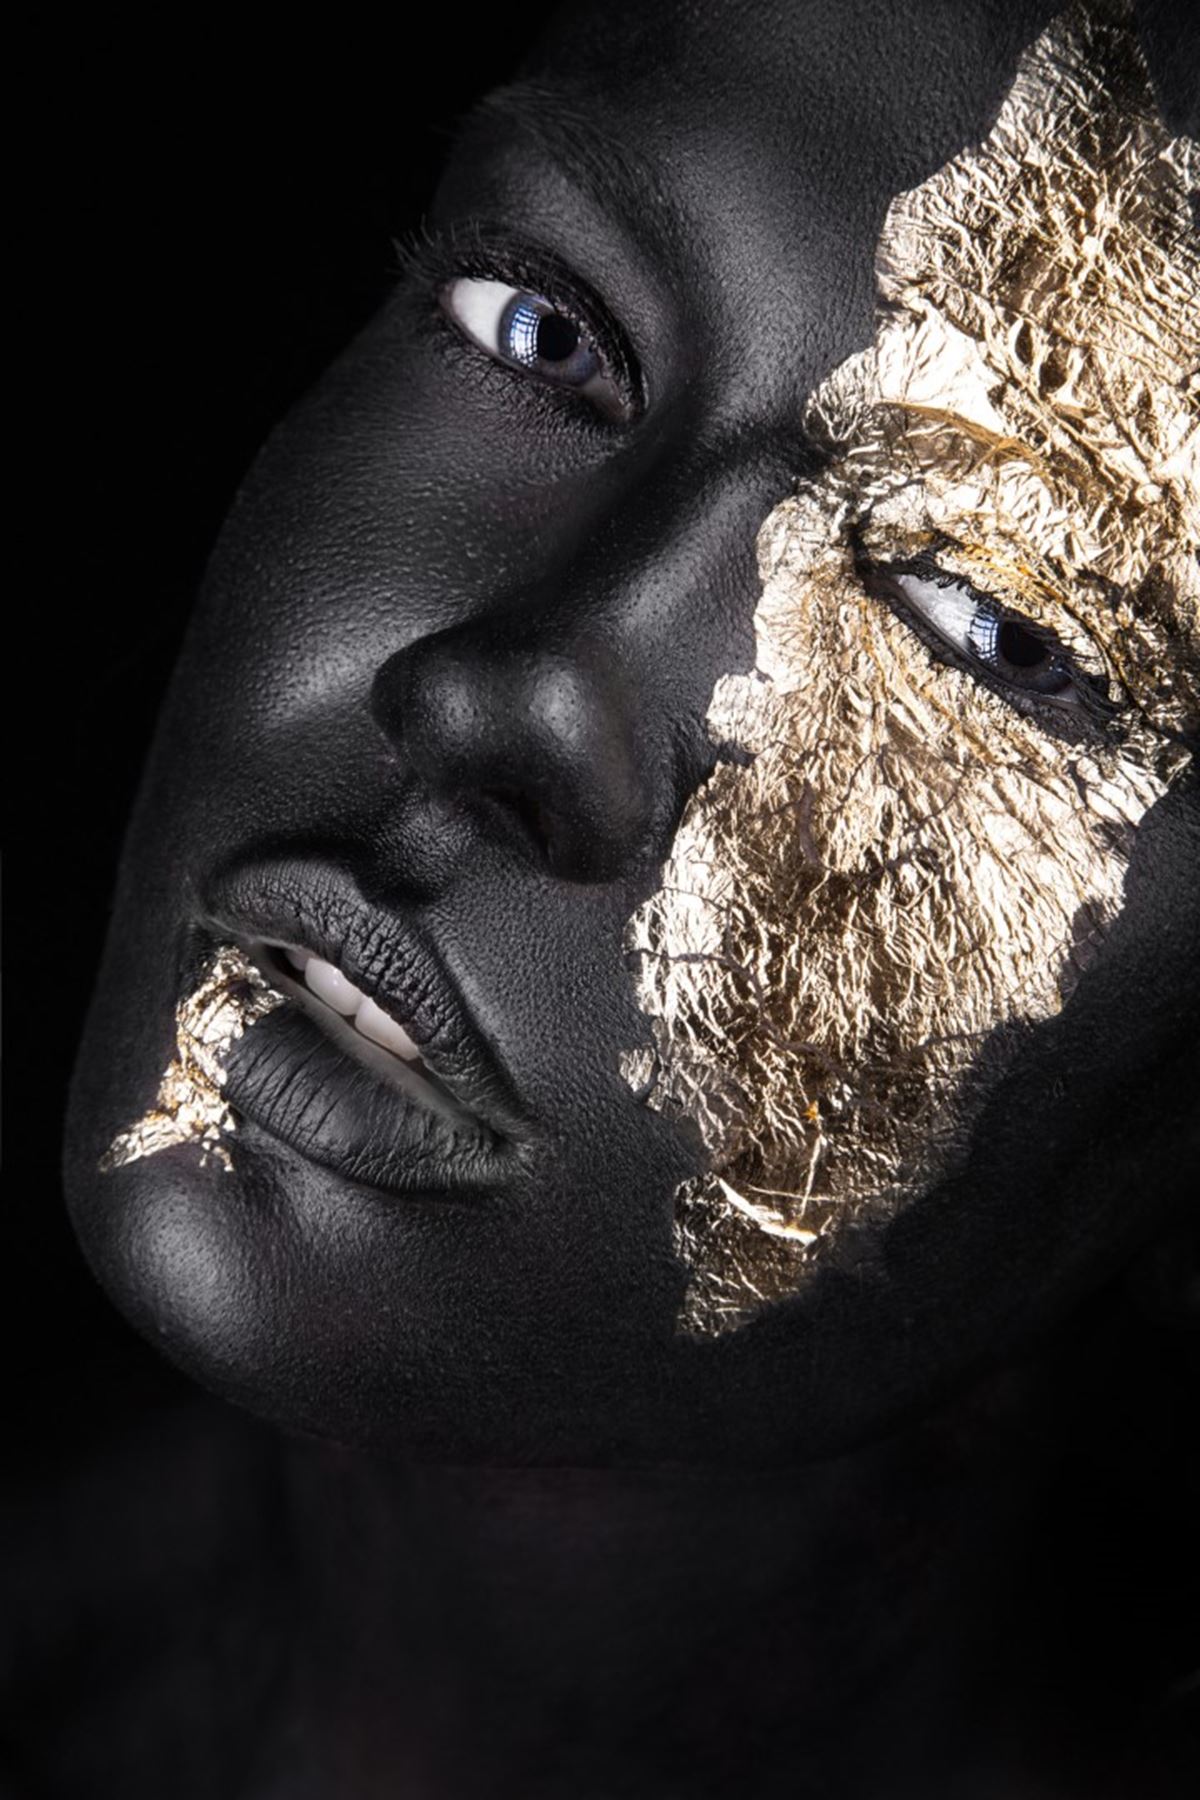 Black Skin Woman and Golden Makeup, Siyah Tenli Kadın ve Altın Makyaj